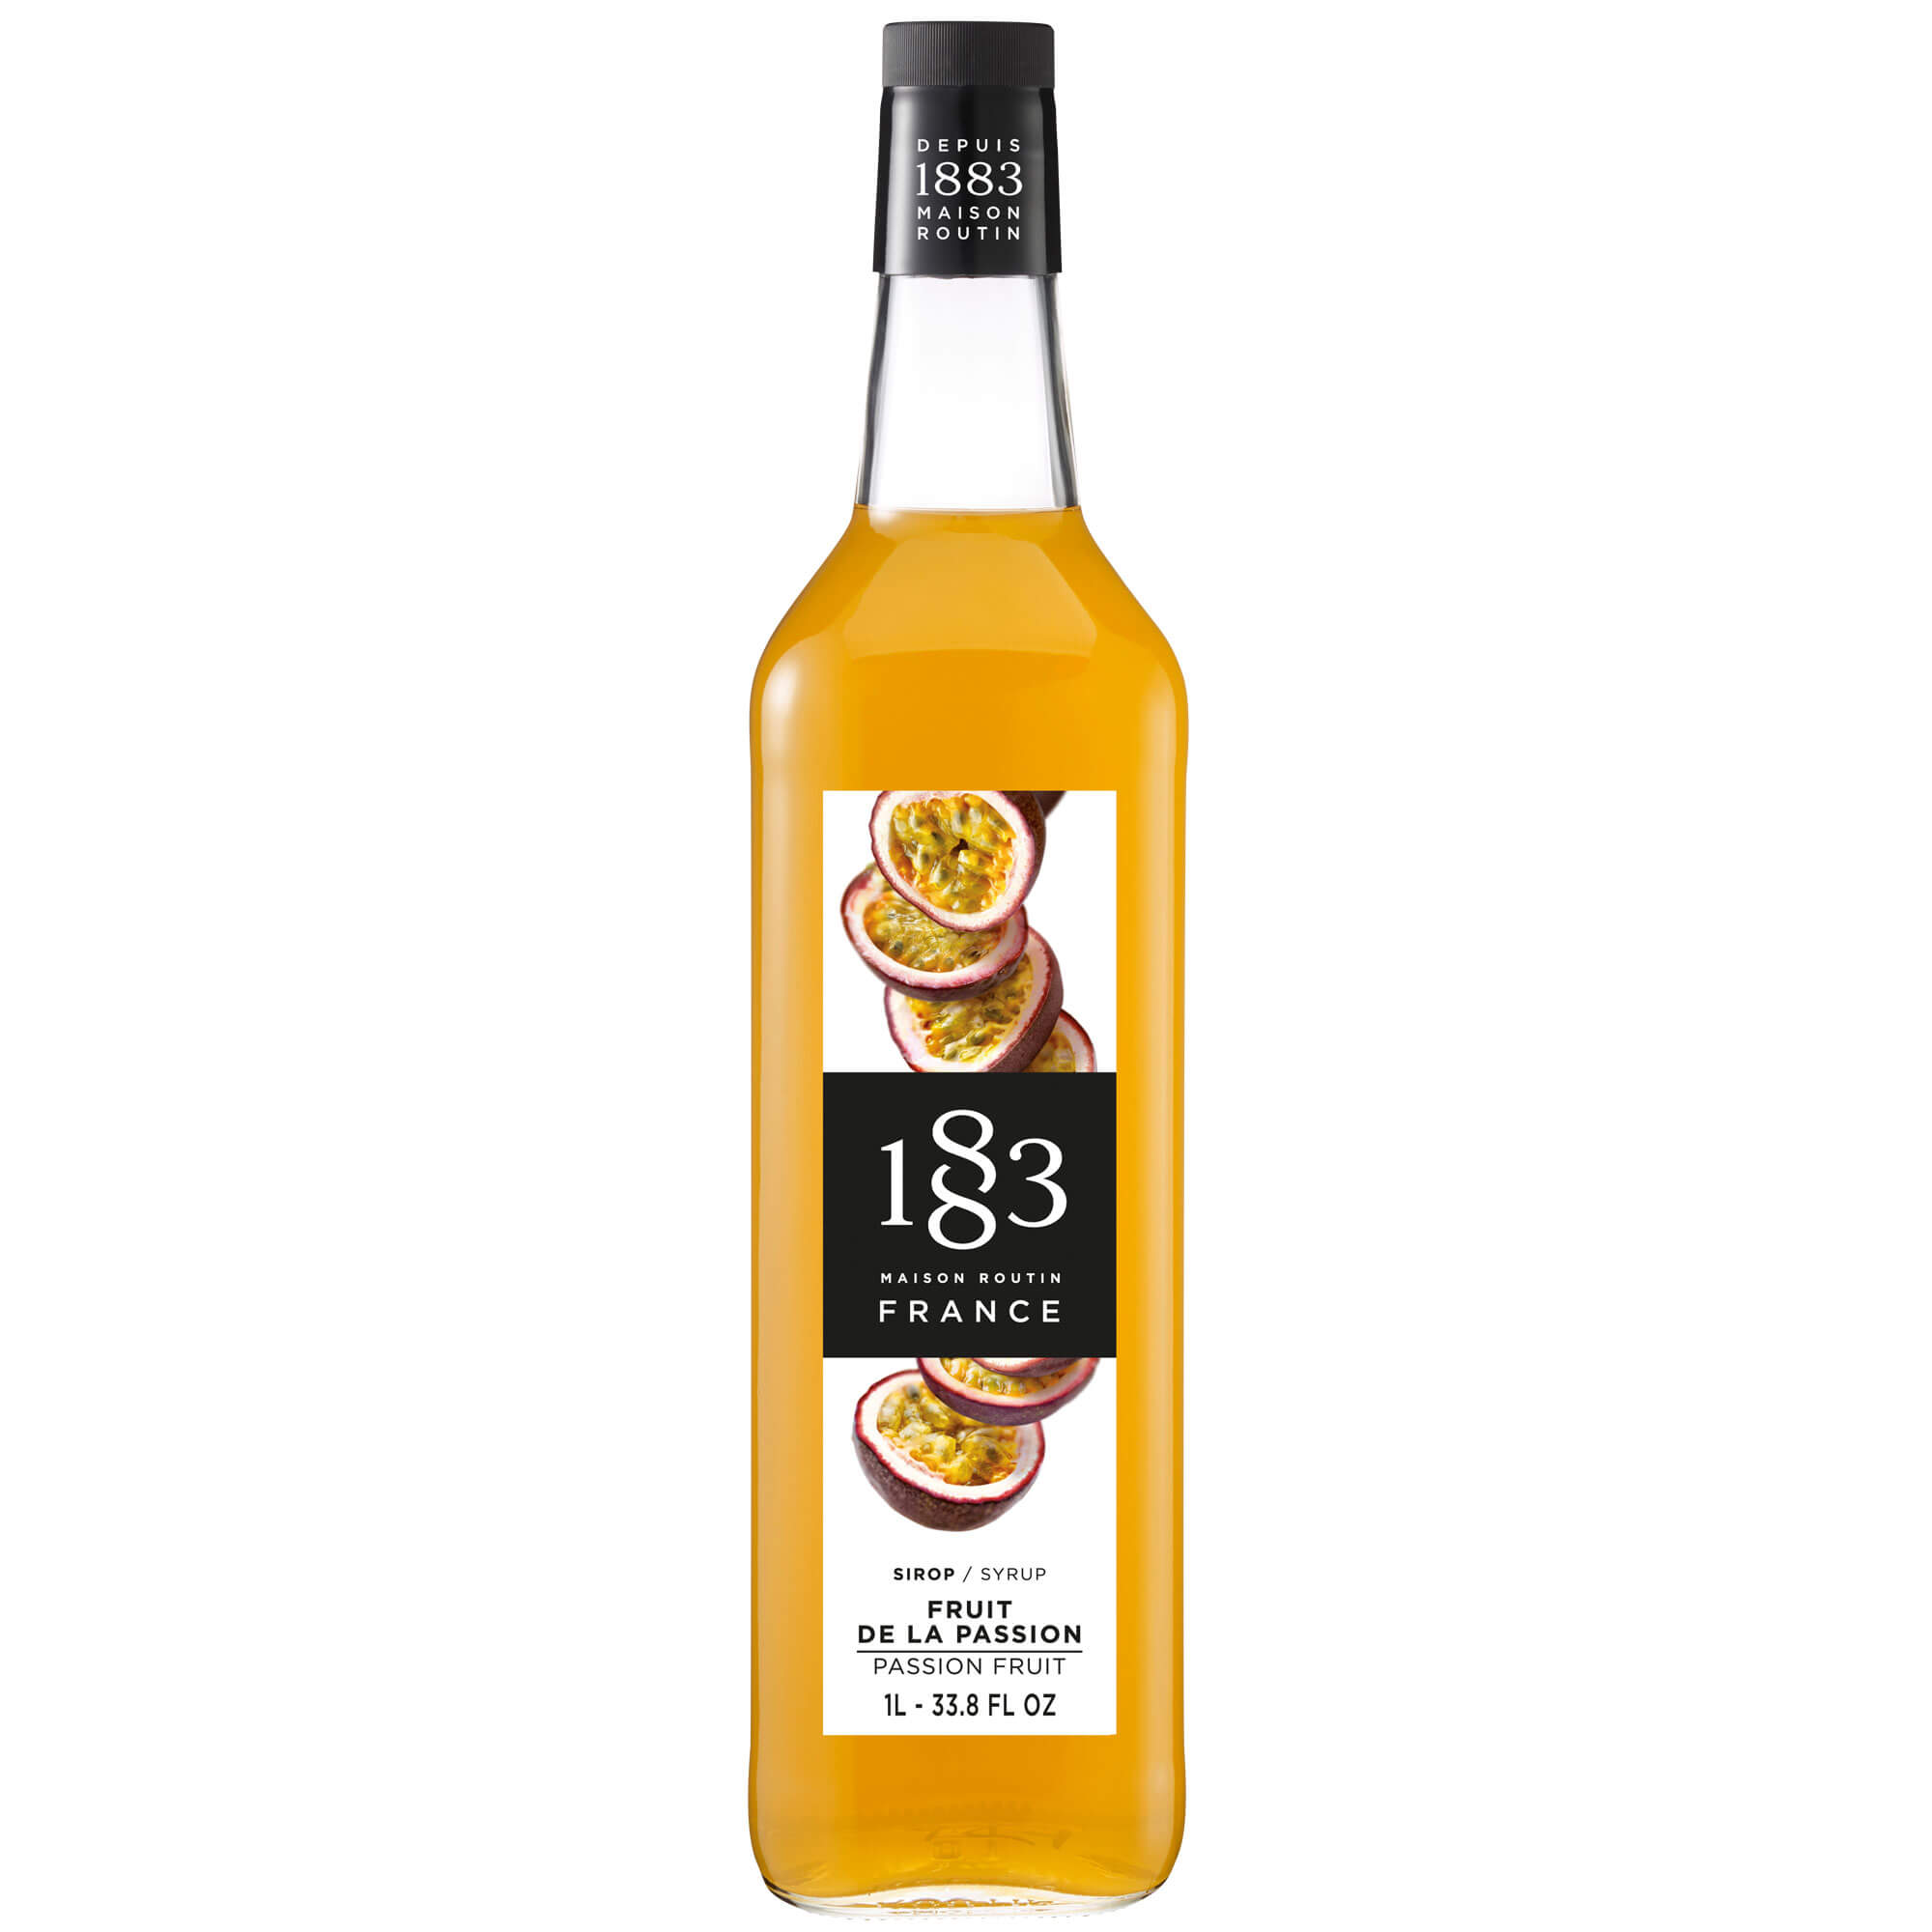 Passion Fruit - Maison Routin 1883 syrup (1,0l)